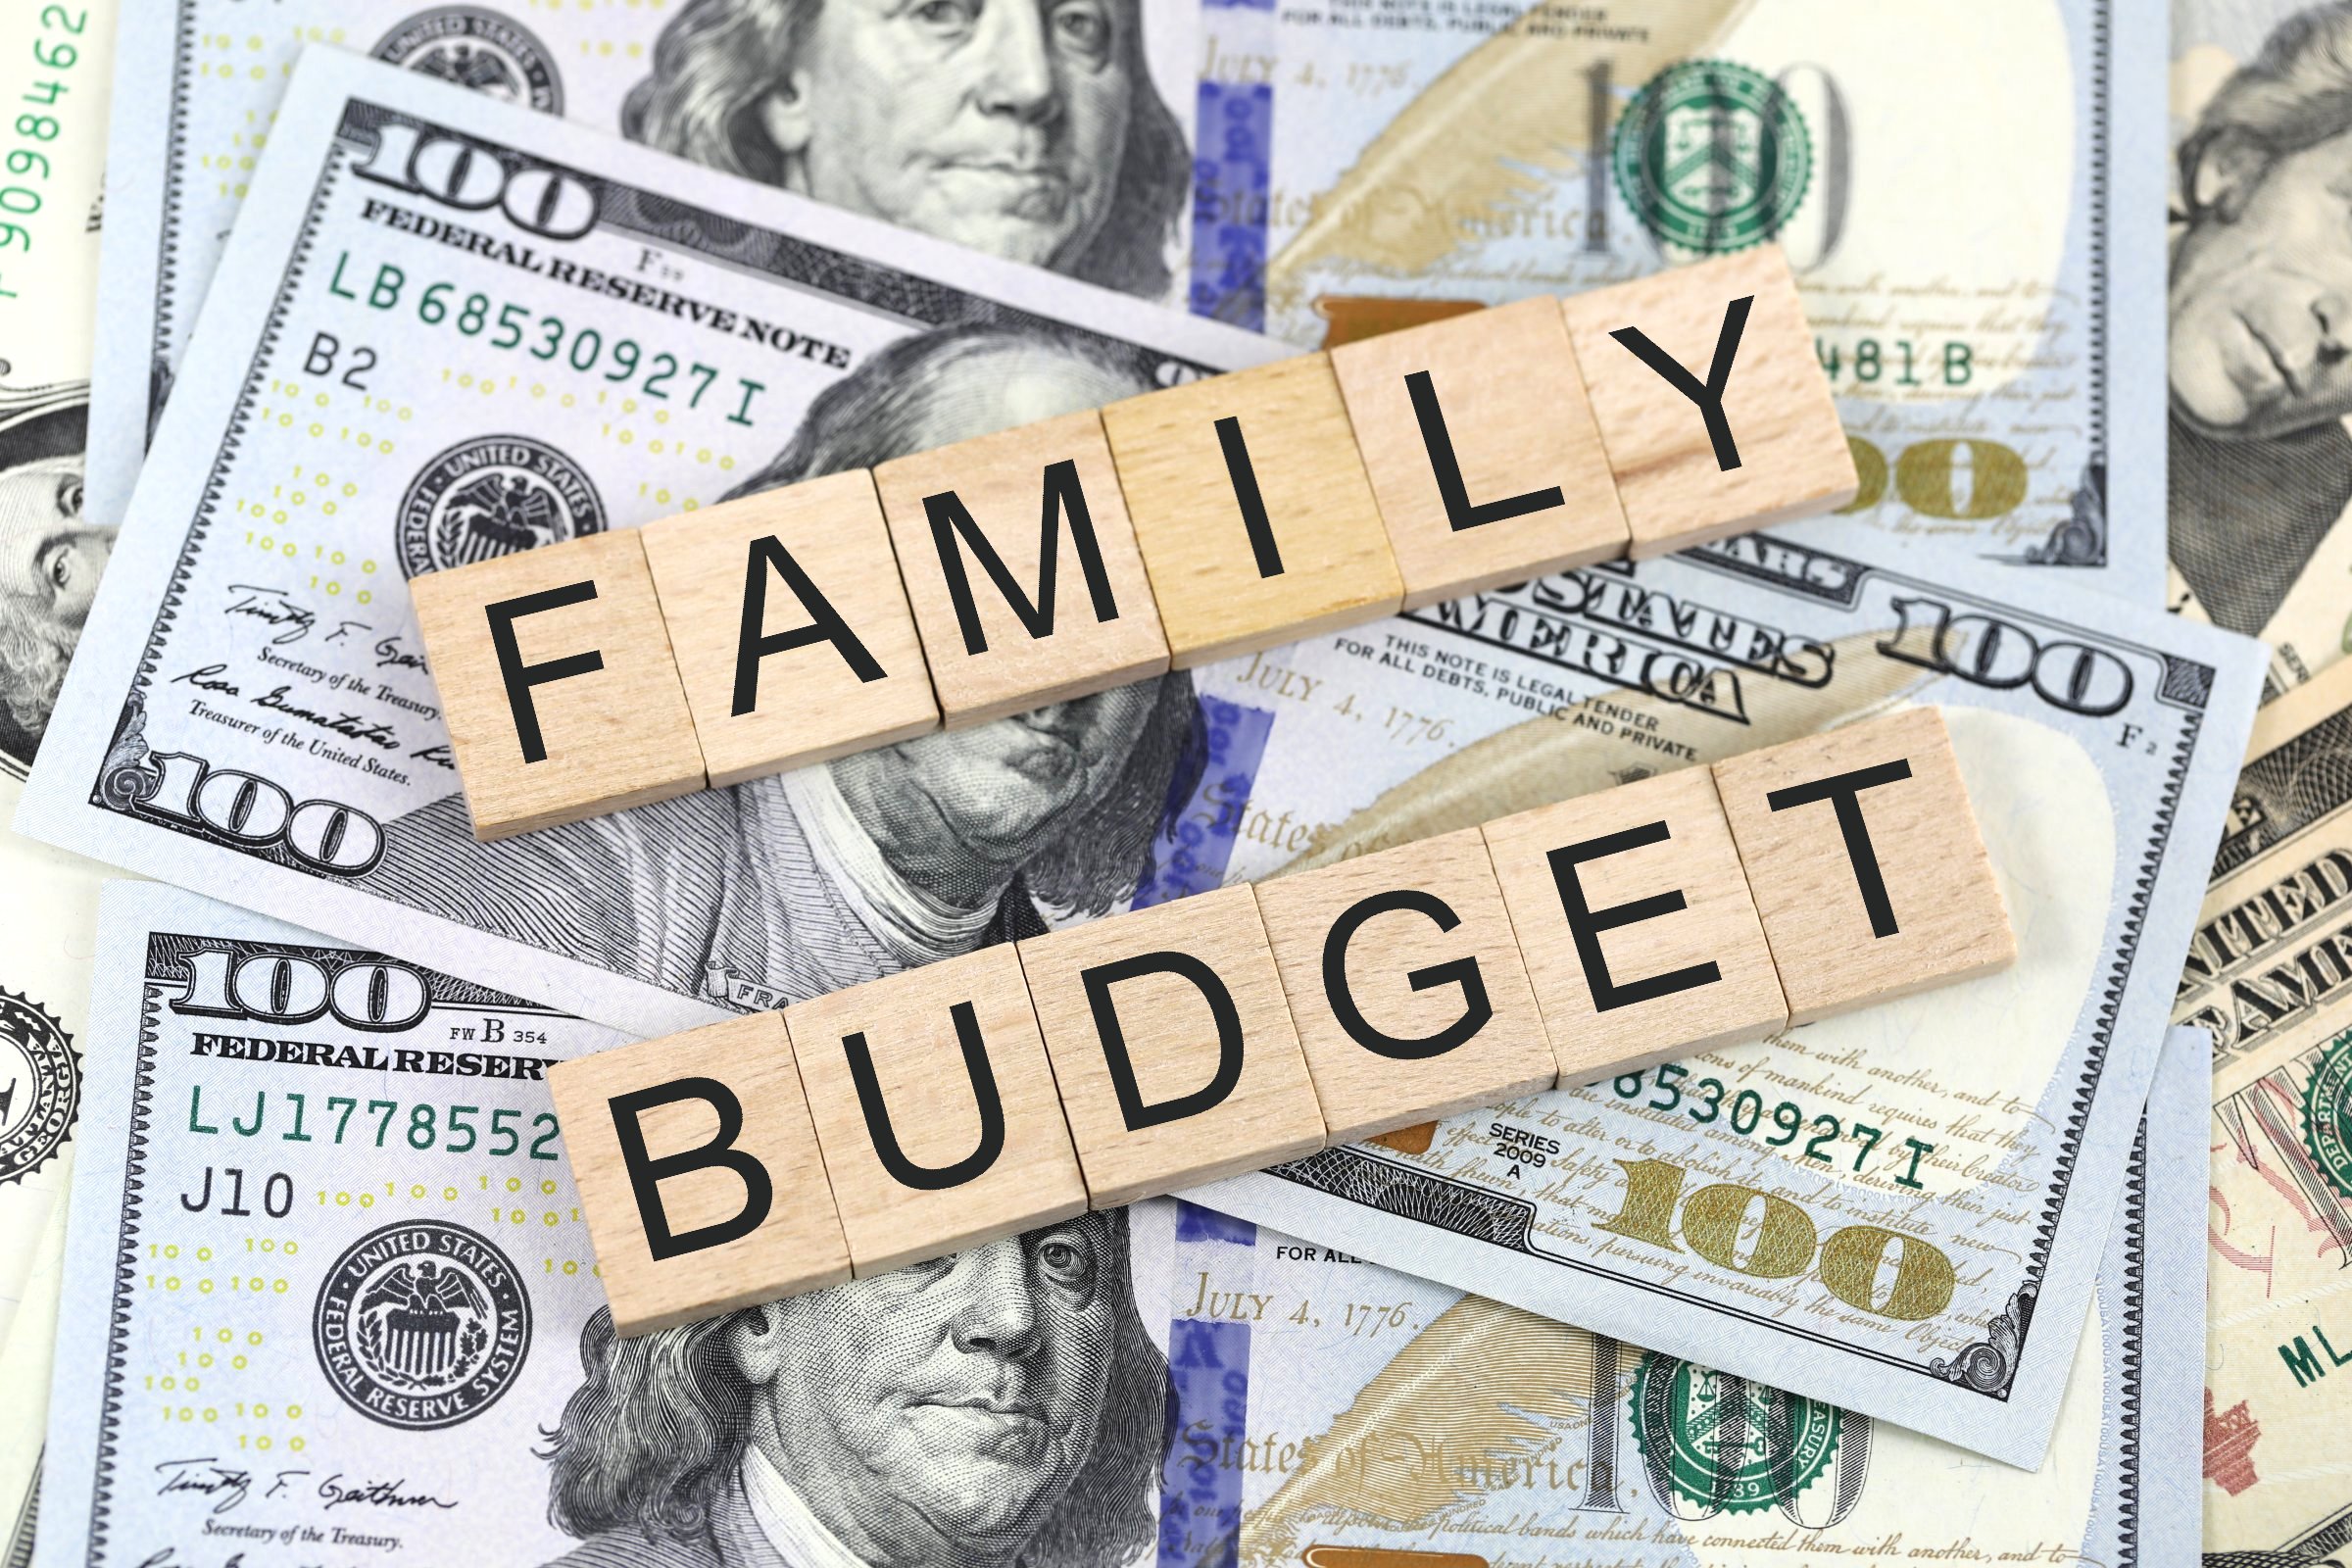 family budget